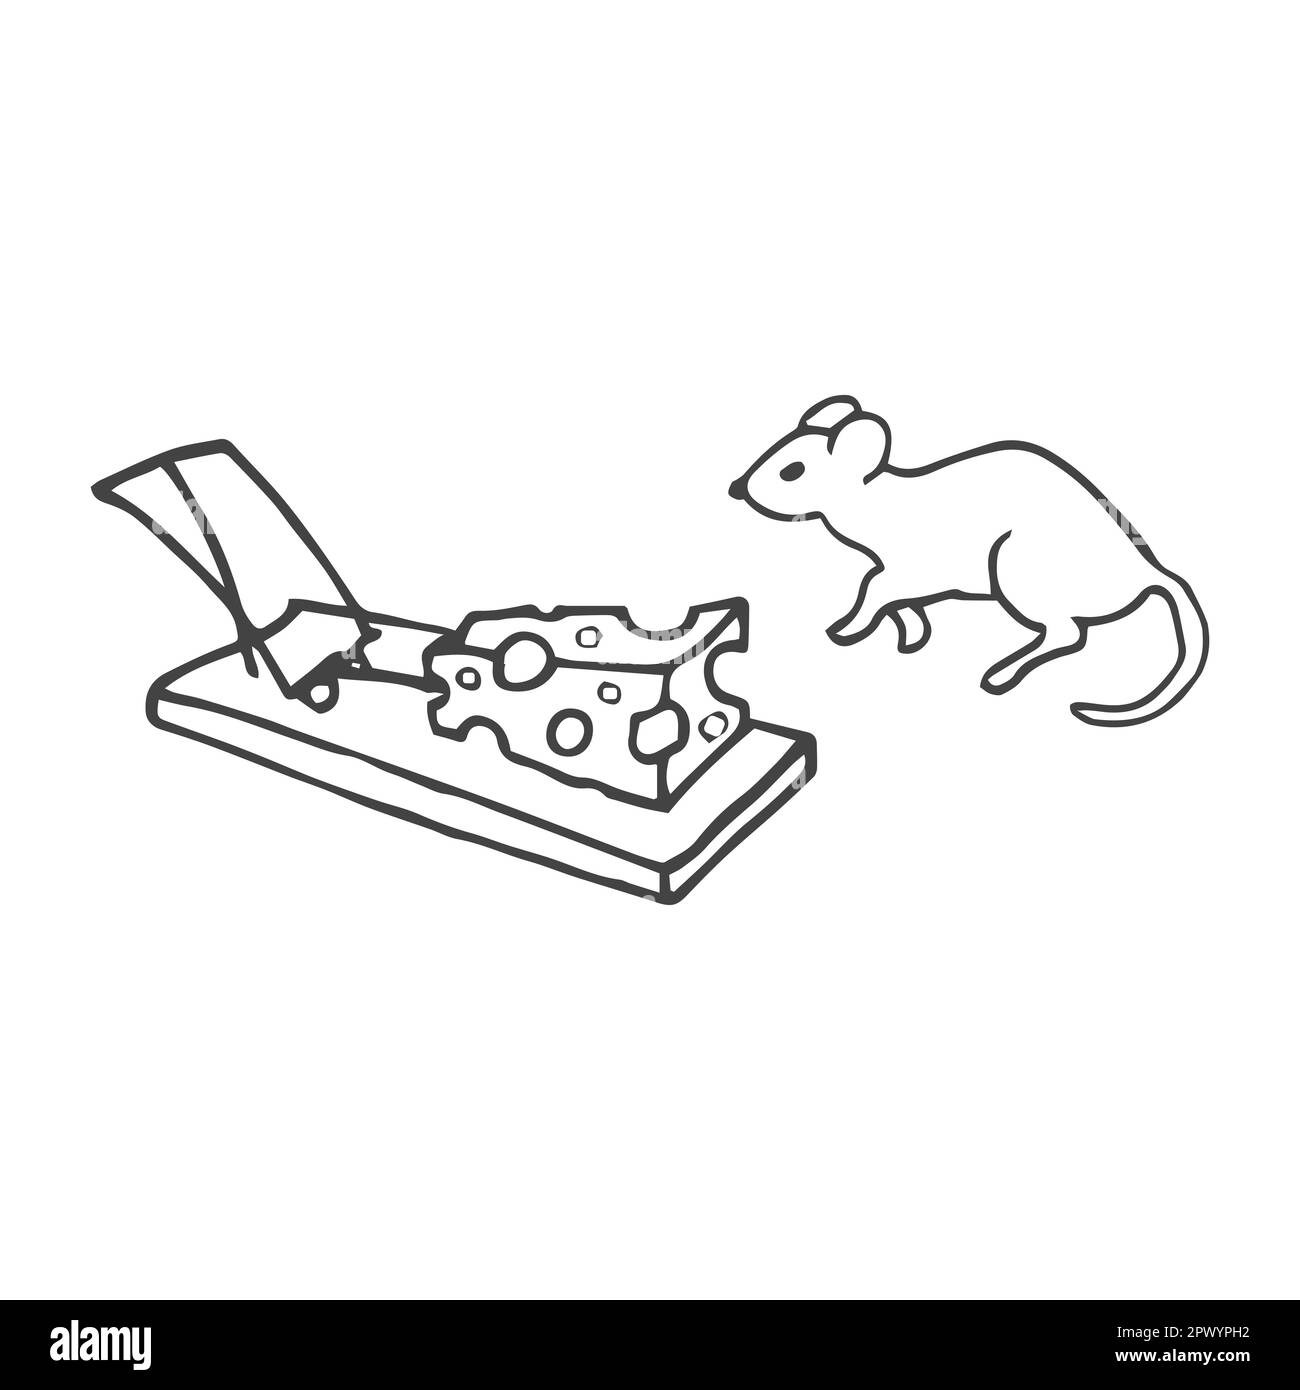 illustration vectorielle d'une souris de dessin animé près d'un mousetrap au fromage. Illustration en noir et blanc Illustration de Vecteur